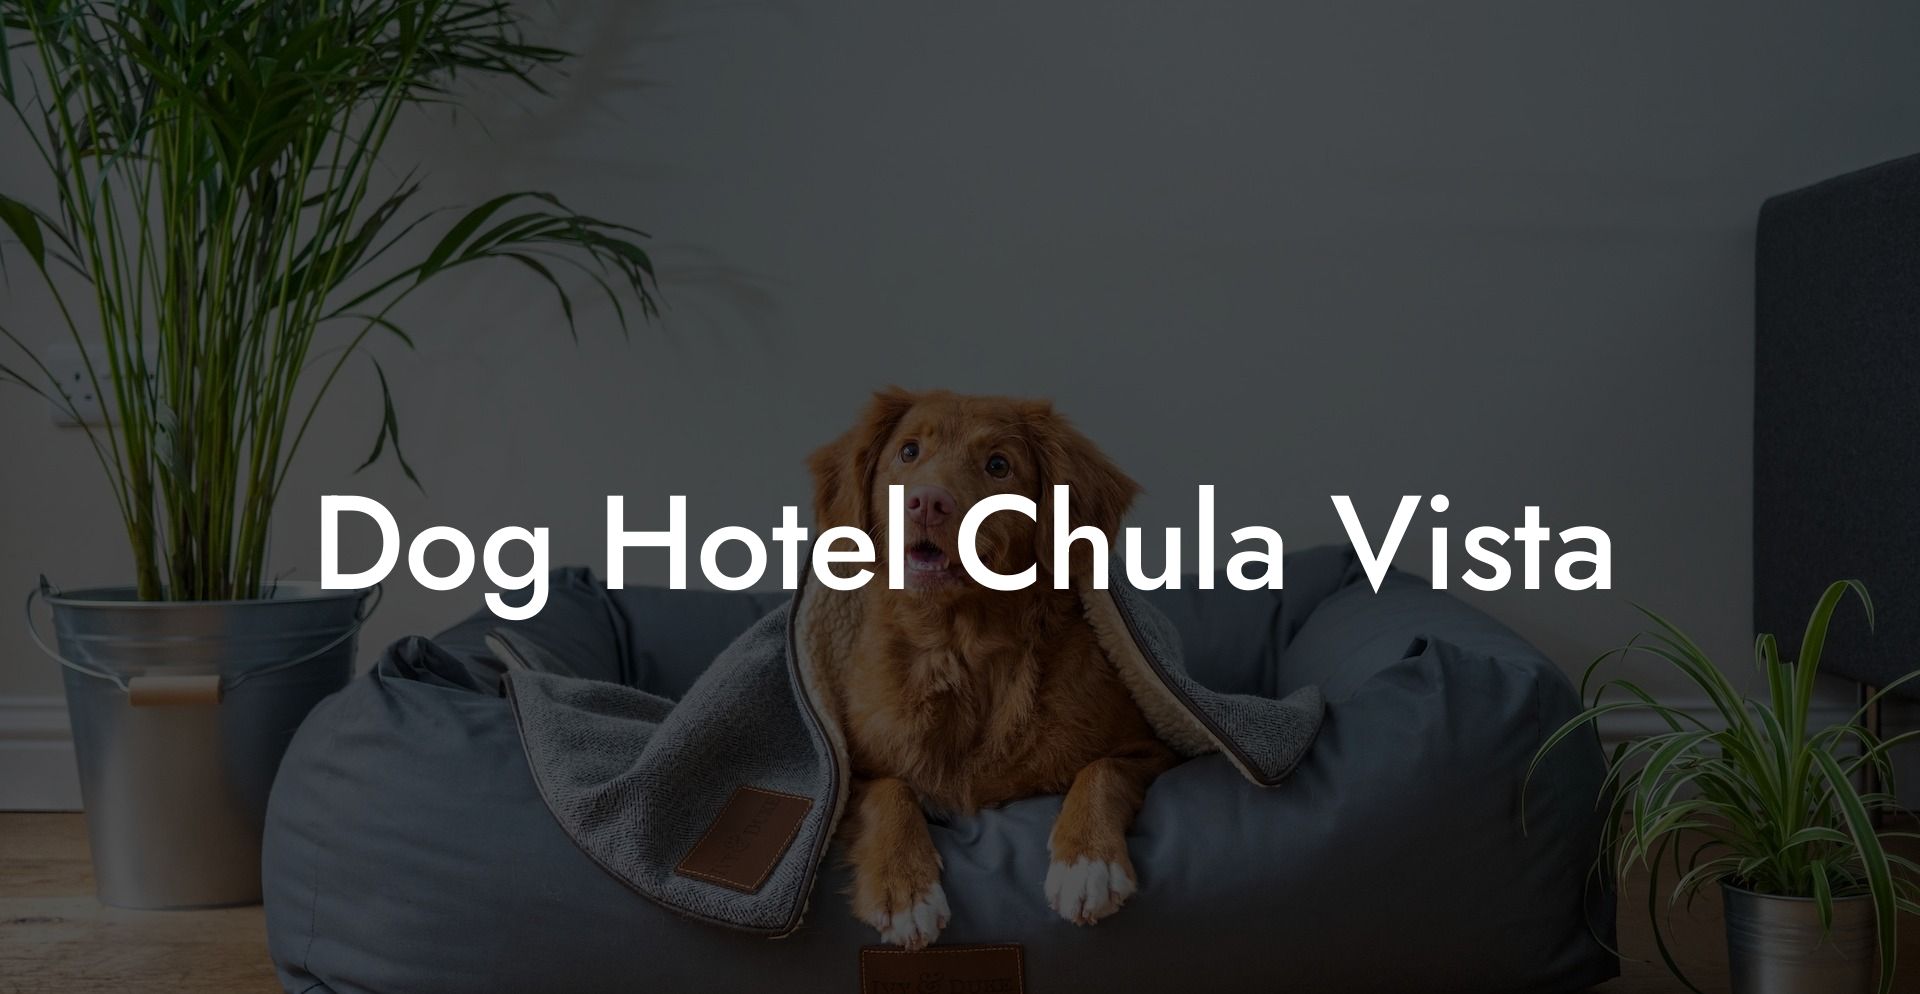 Dog Hotel Chula Vista